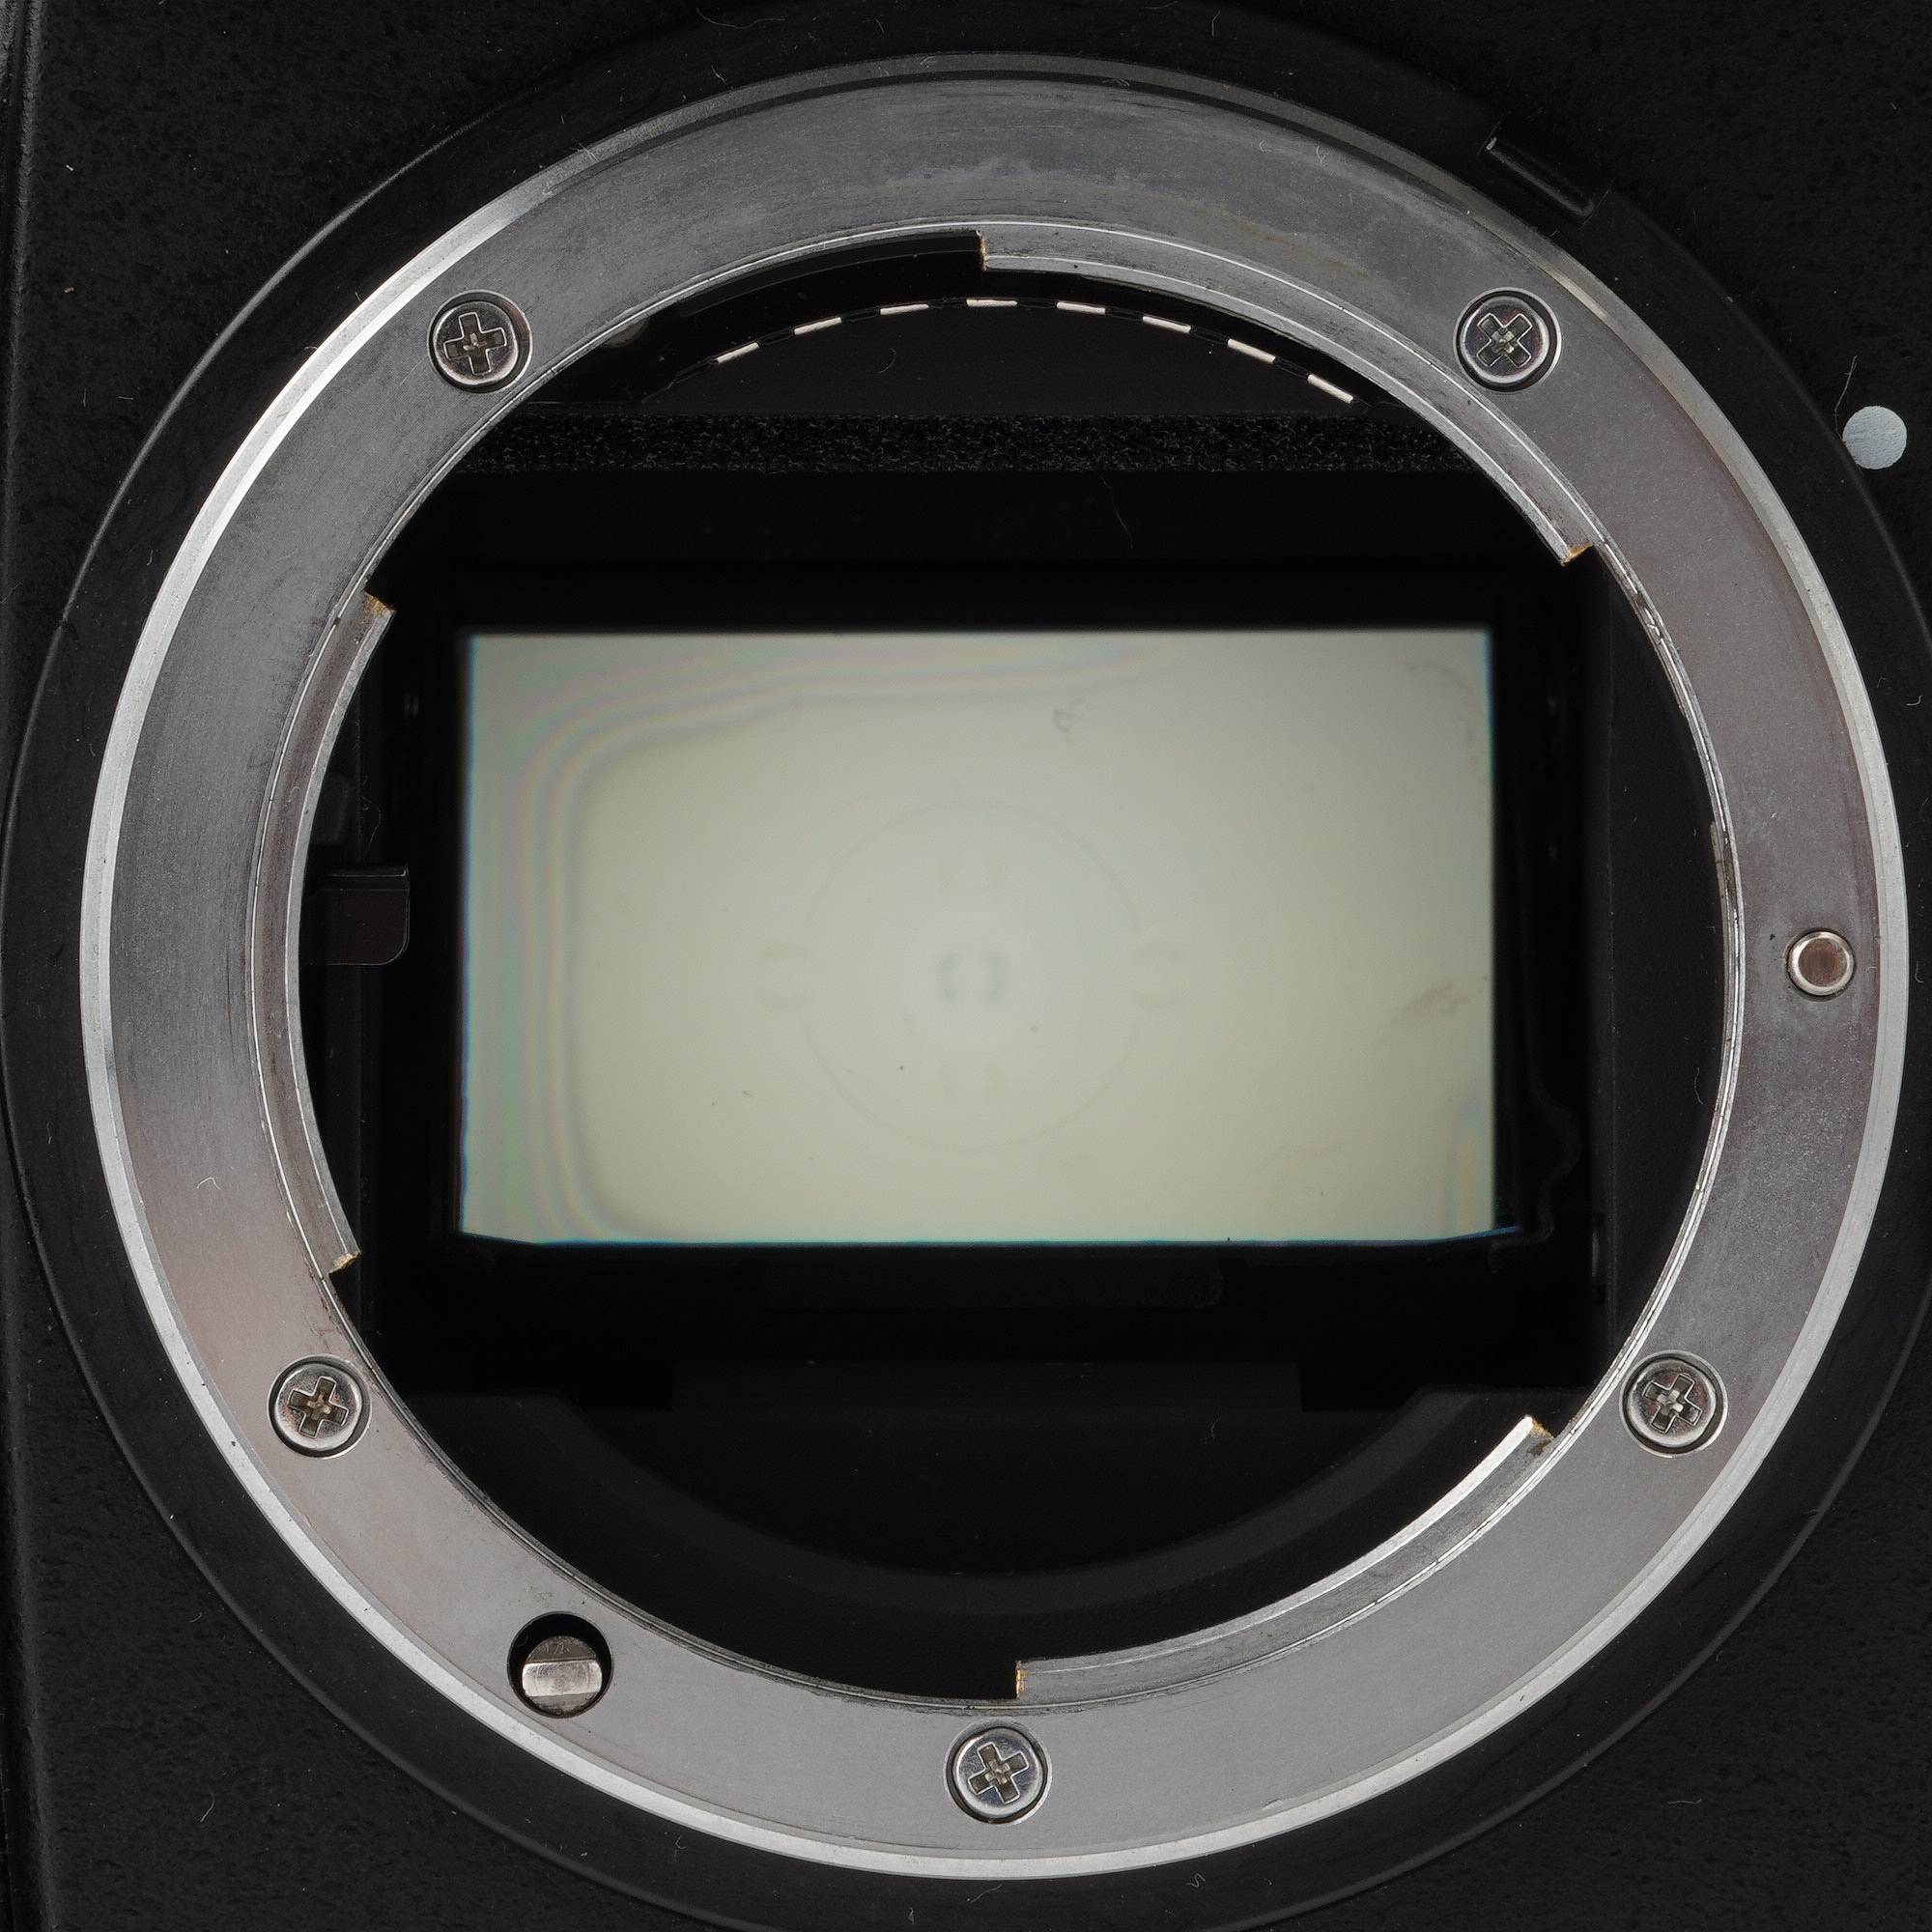 ニコン Nikon F5 一眼レフ フィルムカメラ / アクションファインダー 